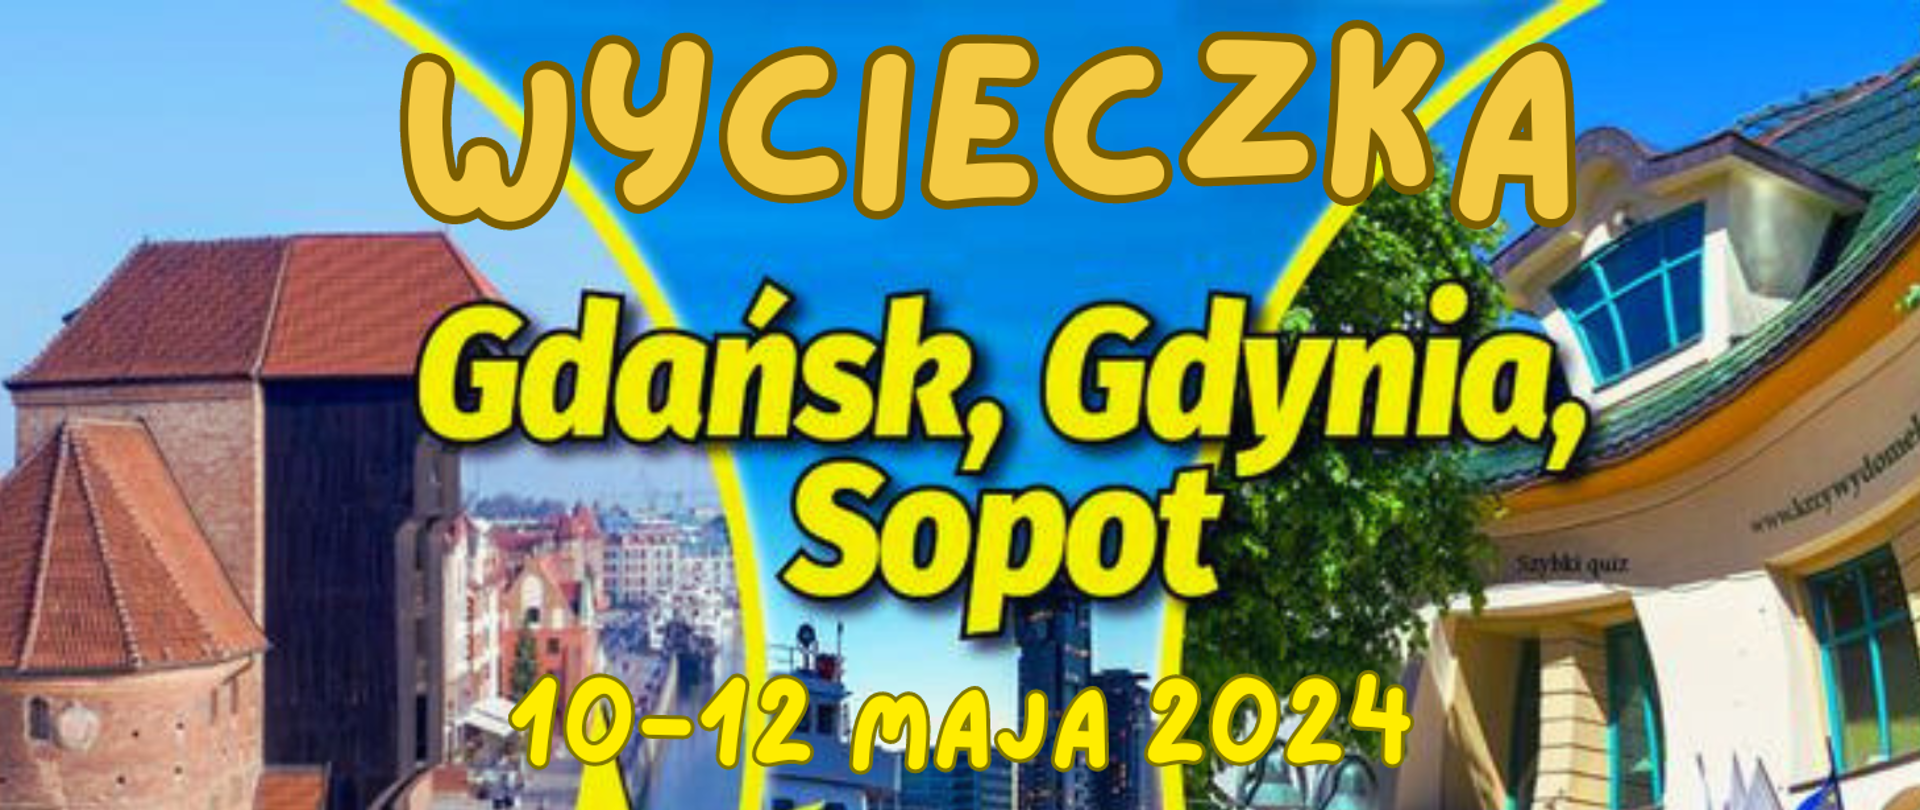 Zdjęcie przedstawia zapowiedź wycieczki szkolnej do Gdańska Gdyni i Sopotu w dniach 10-12 maja 2024r. W tle ukazane są zdjęcia z tych miejscowości.